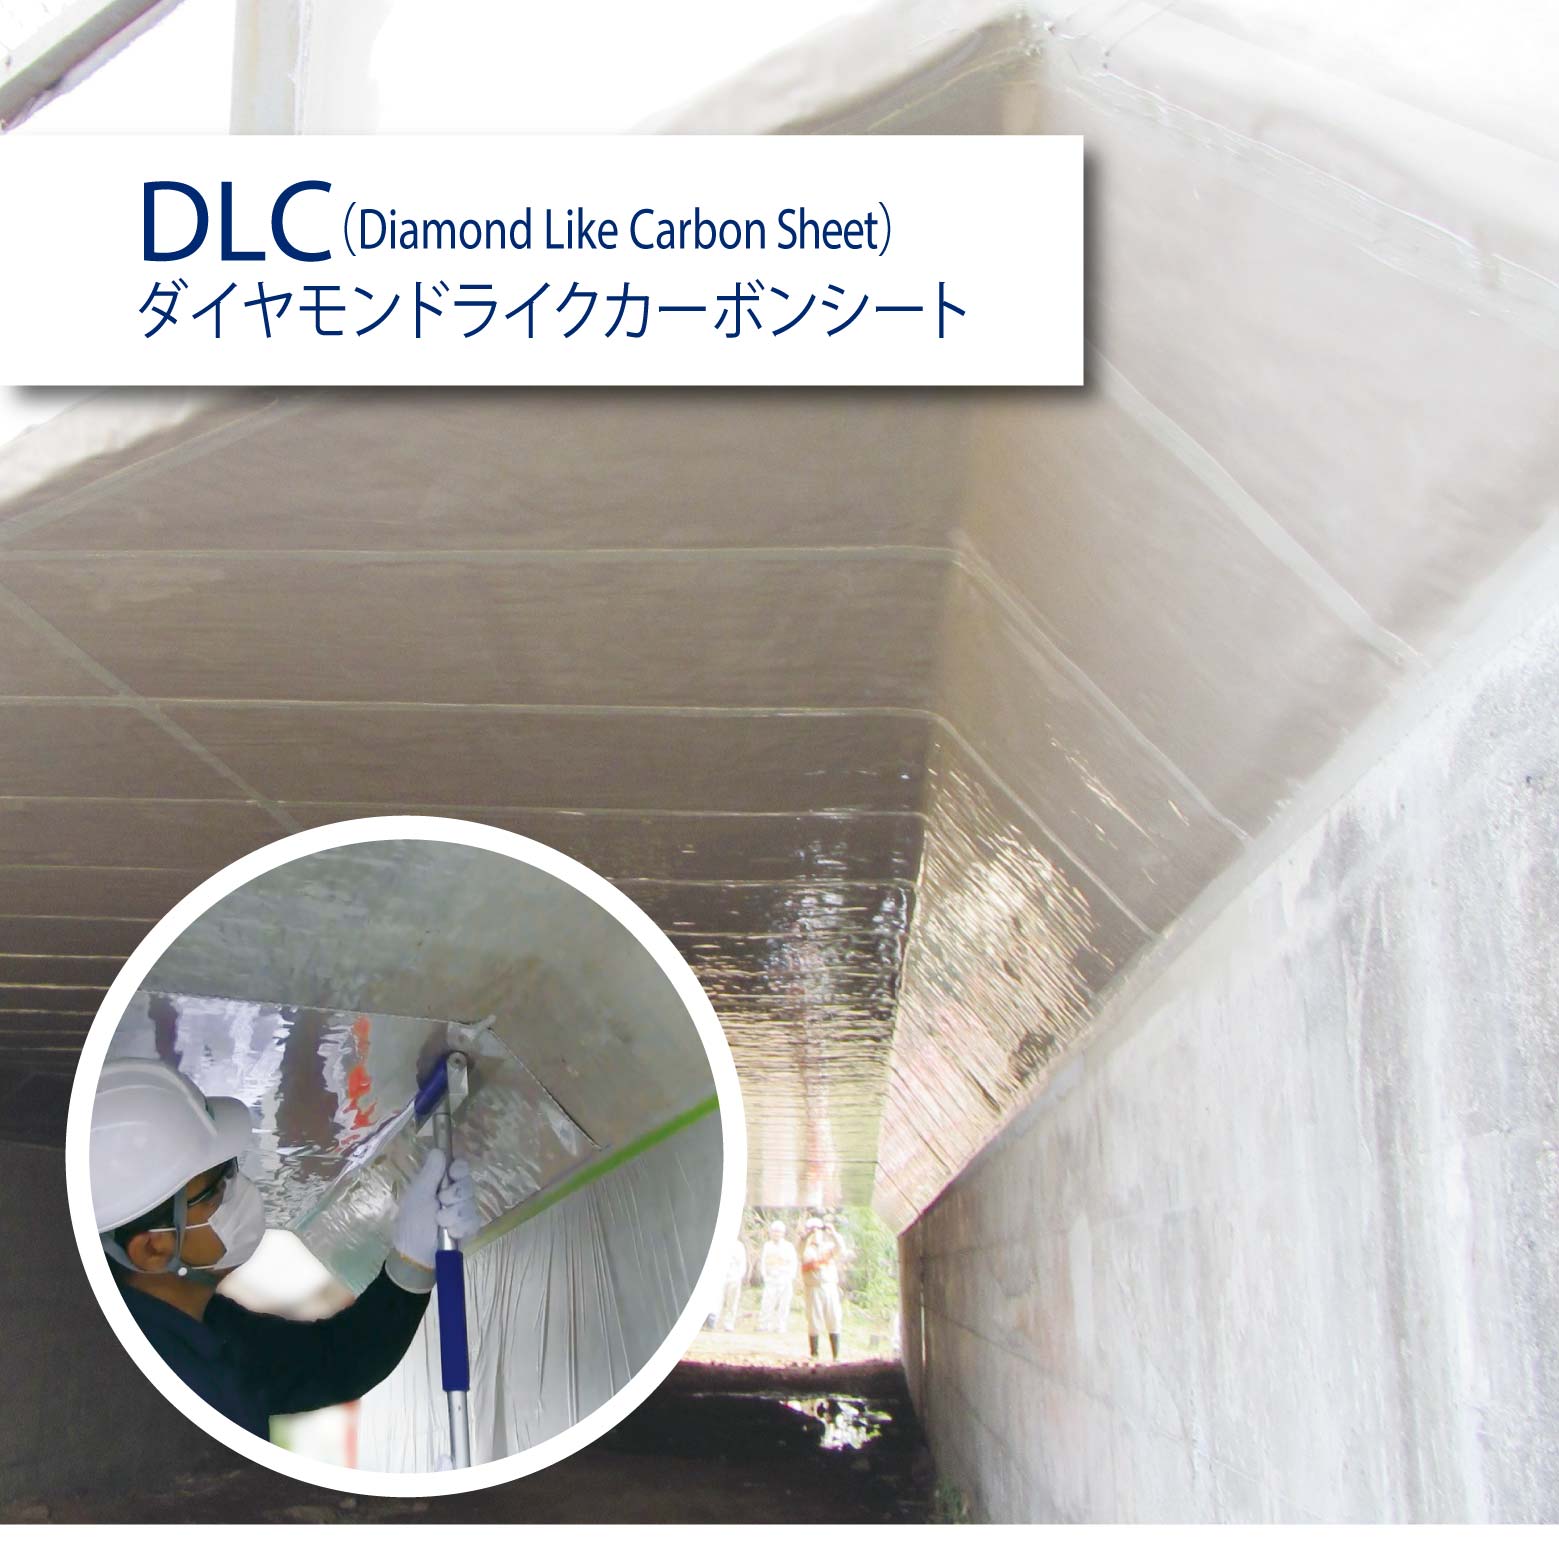 インフラガード DLC - ダイヤモンドライクカーボンシート(予防保全・長寿命化シート)